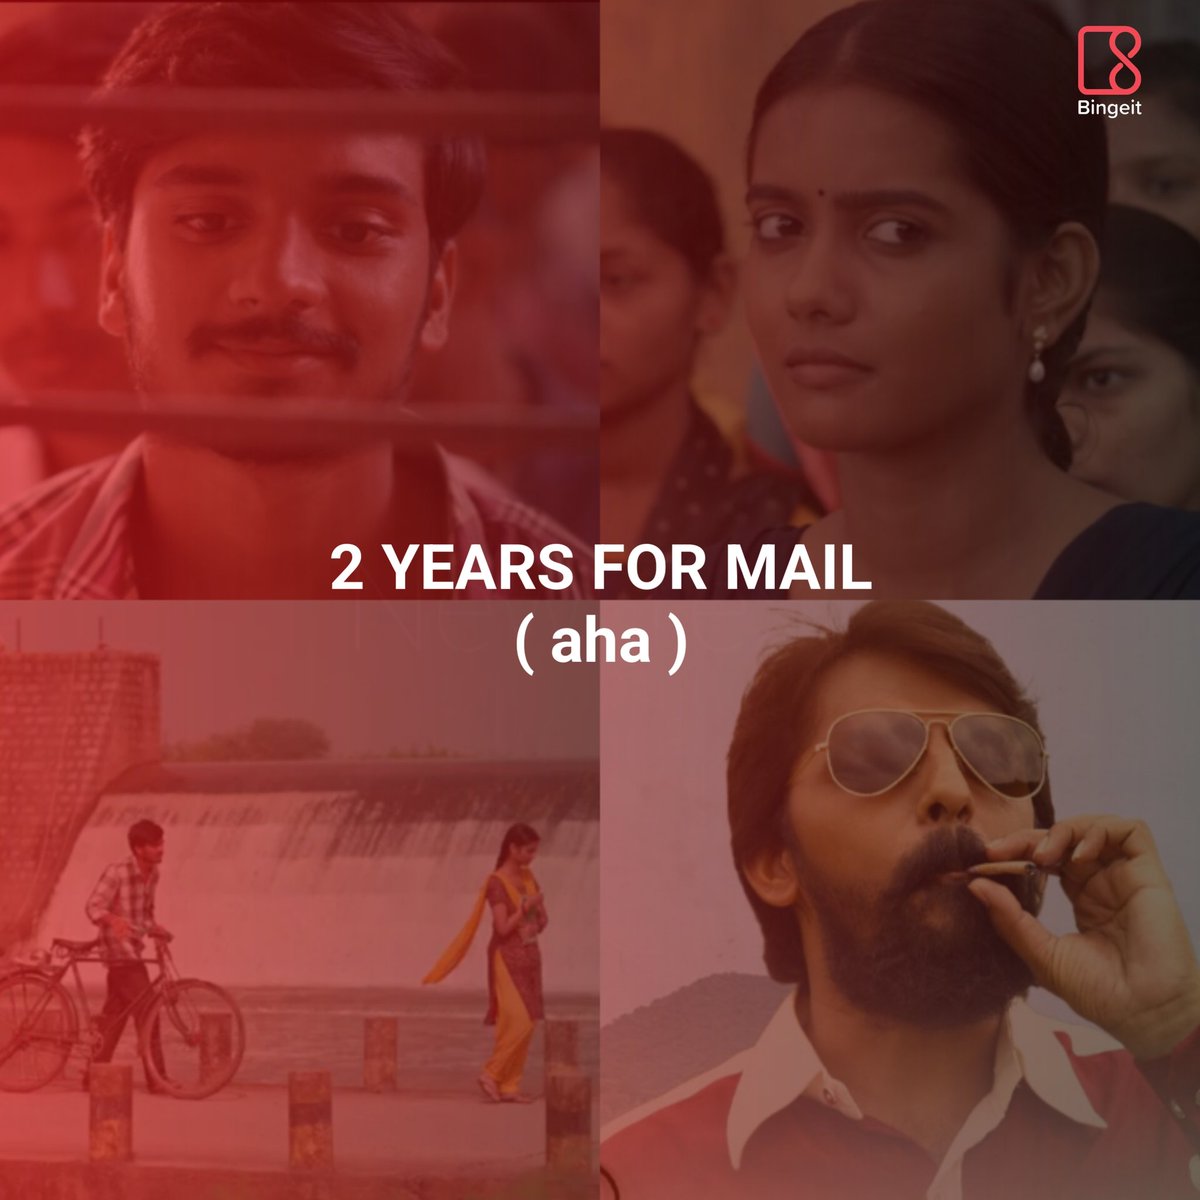 2 years for #Mail
#MailOnAHA Streaming Now
@priyadarshi_i @HarshithReddyM #ManiAegurla #UdayGurrala